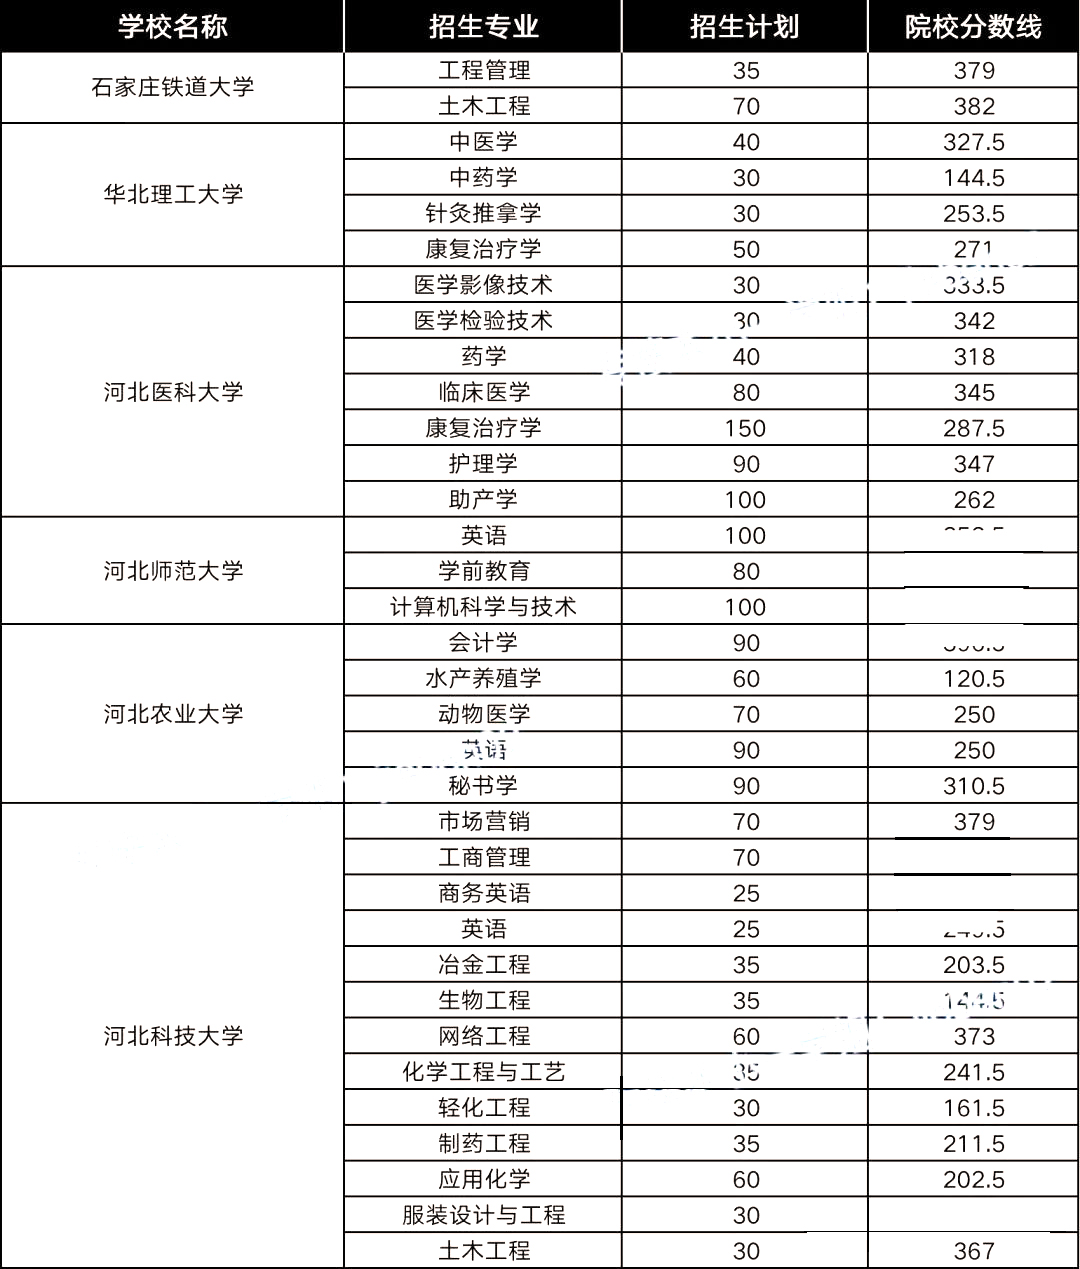 6,22021年河北医科大学临床学院在广东物理的最低录取分数线为502分